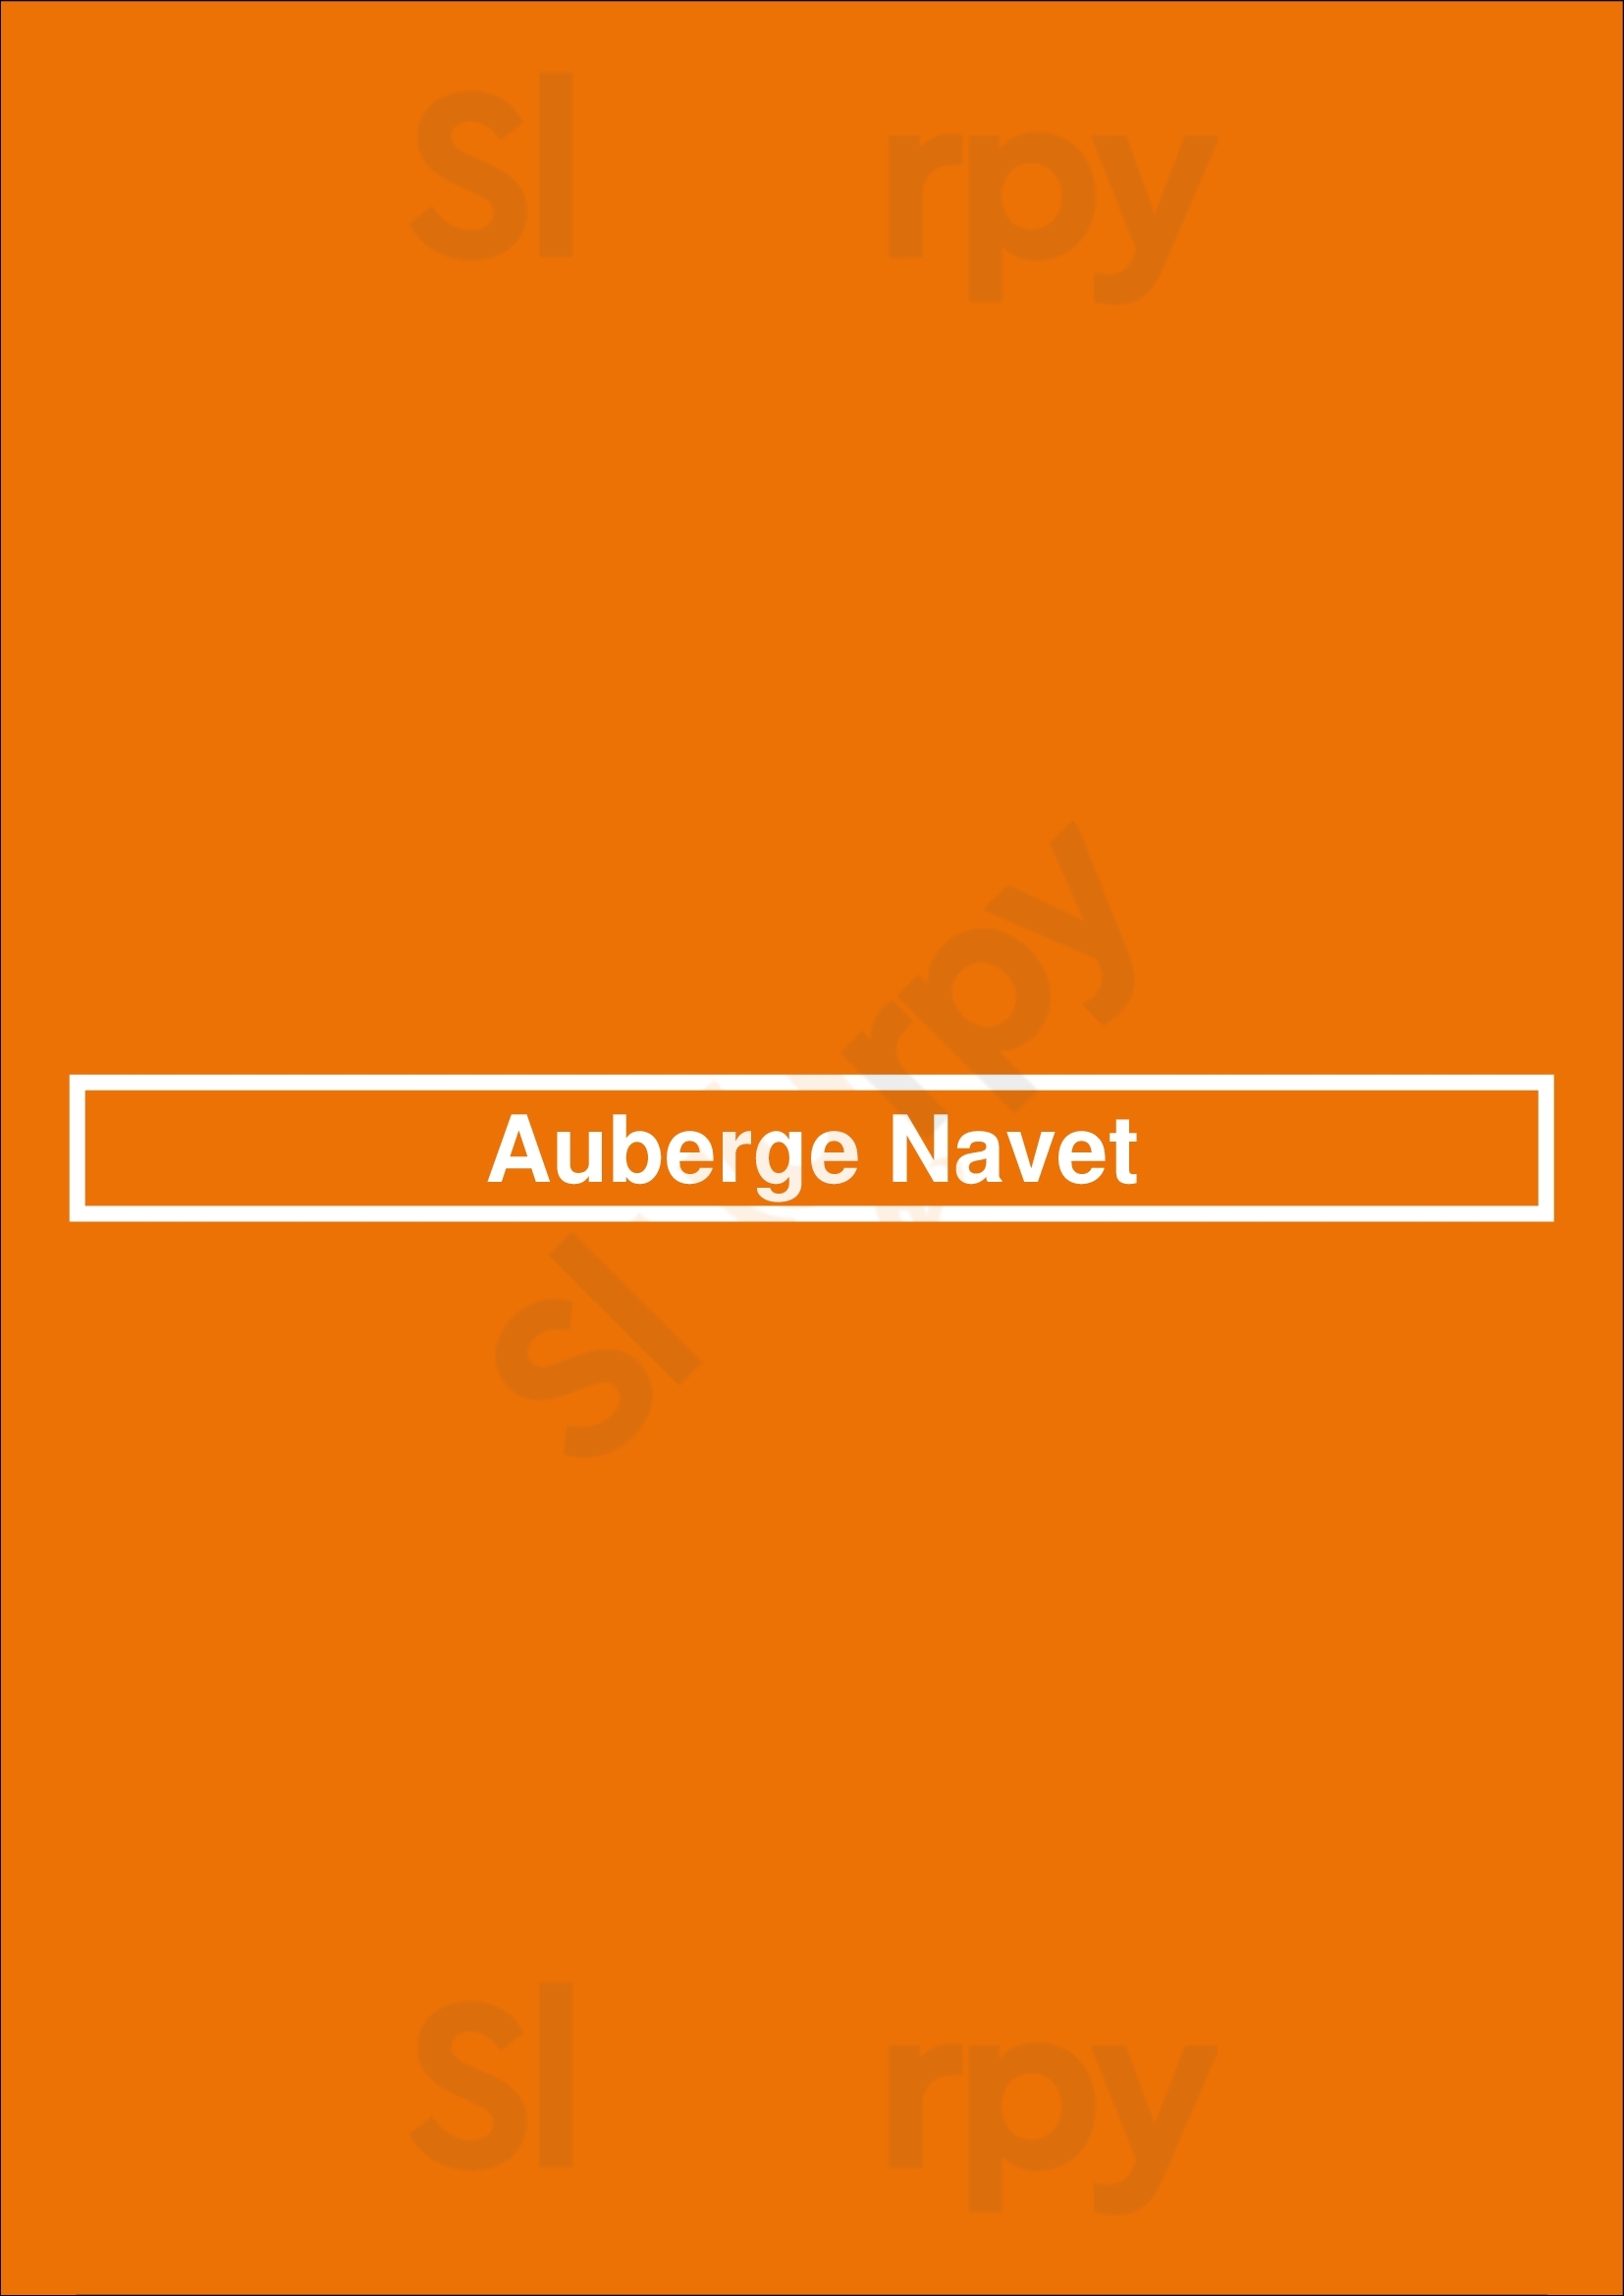 Auberge Navet Apeldoorn Menu - 1